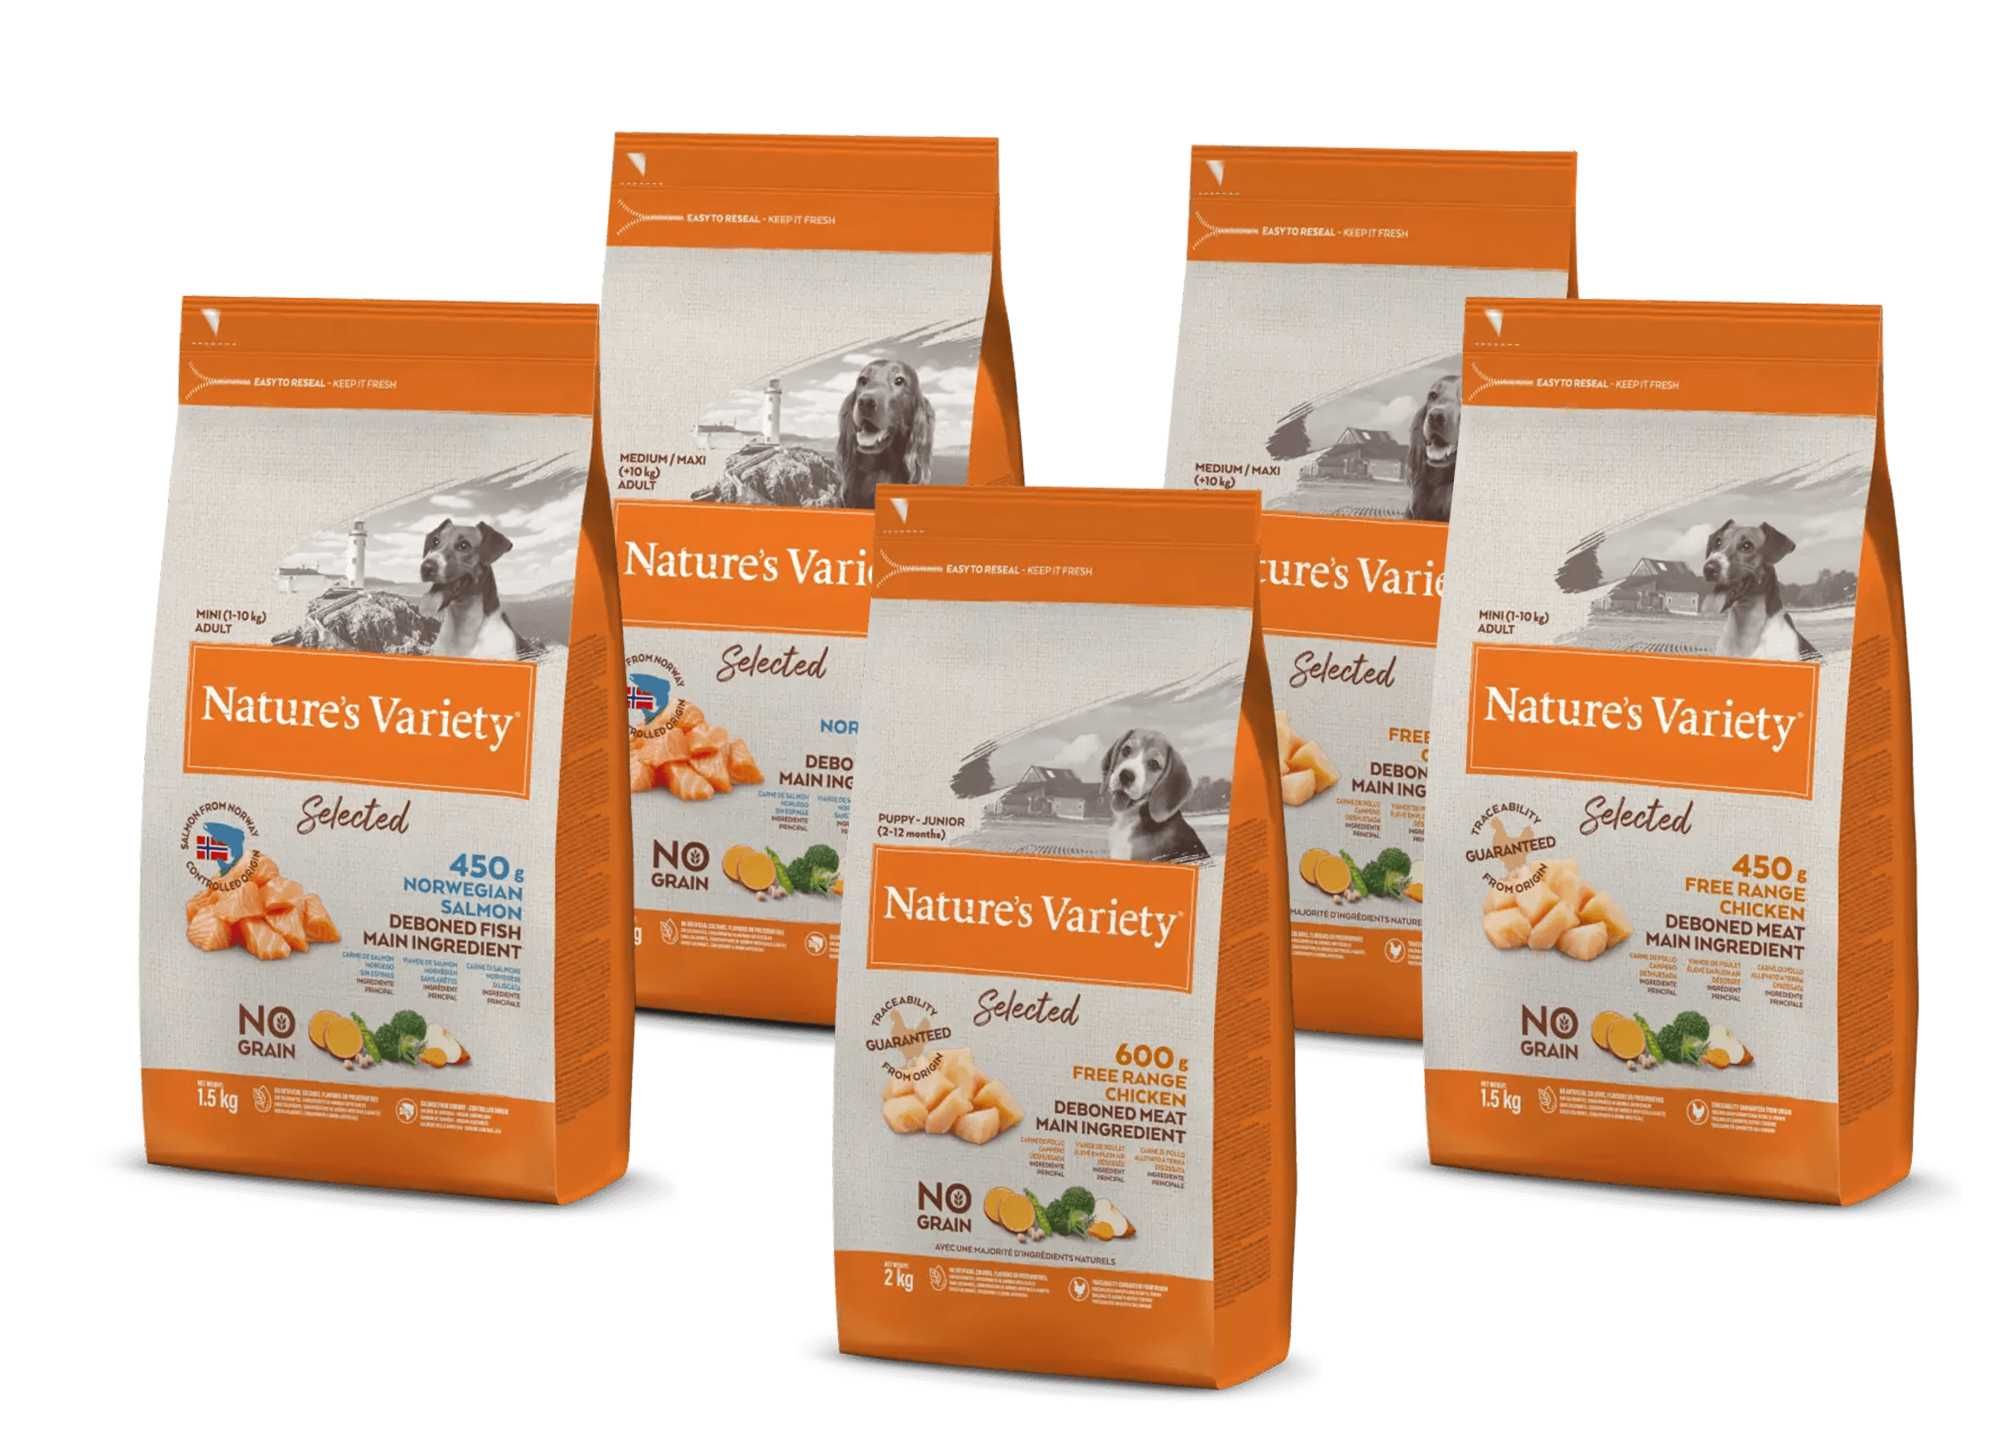 NOVO - Nature's Variety DOG Selected Grain Free